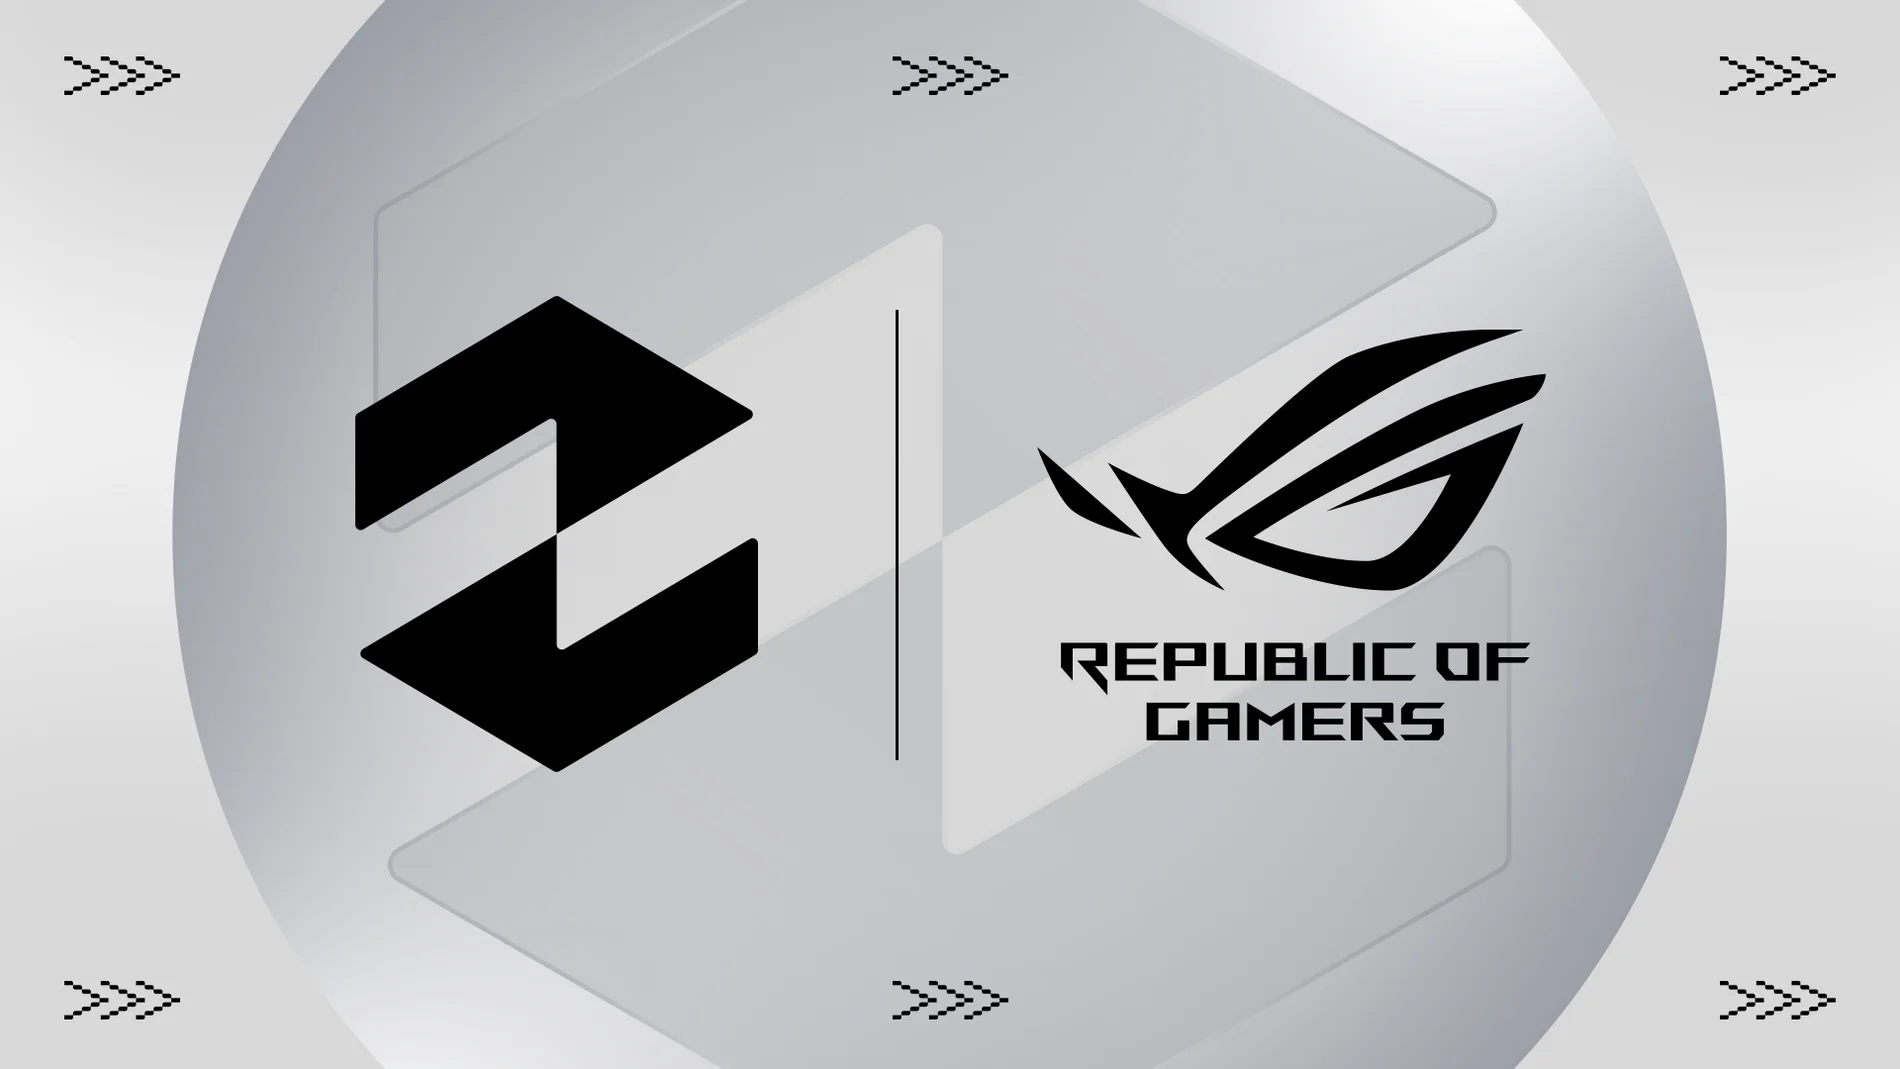 La prestigiosa compañía de desarrollo de equipos y componentes electrónicos Republic of Gamers (ROG), se une al club de Zaragoza como patrocinador técnico en 2024